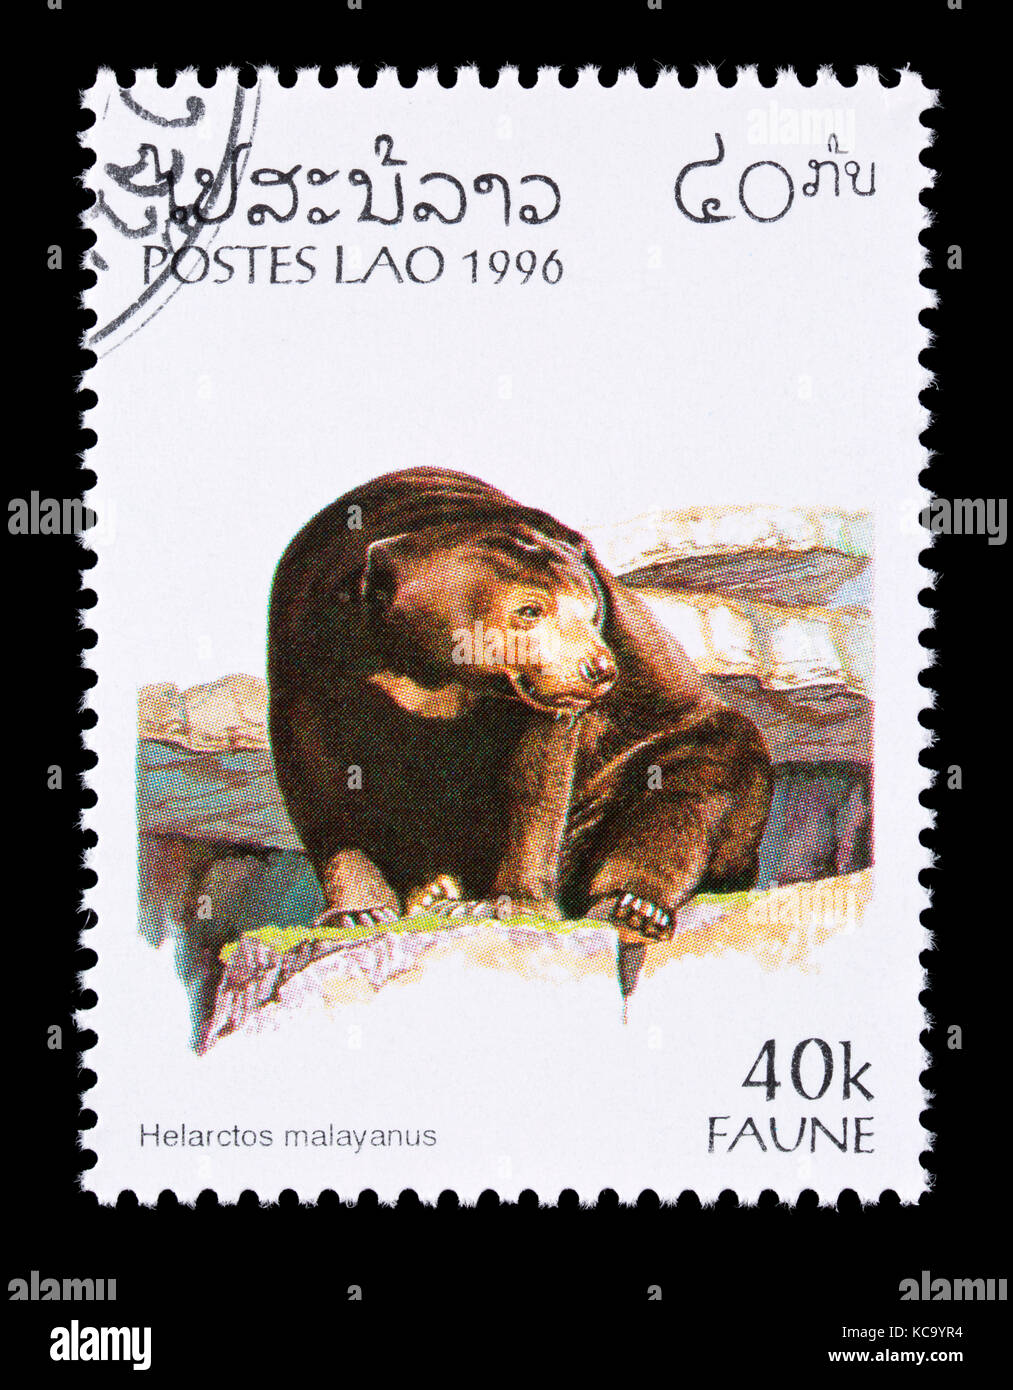 Postage stamp from Laos depicting  sun bear (Helarctos malayanus) Stock Photo